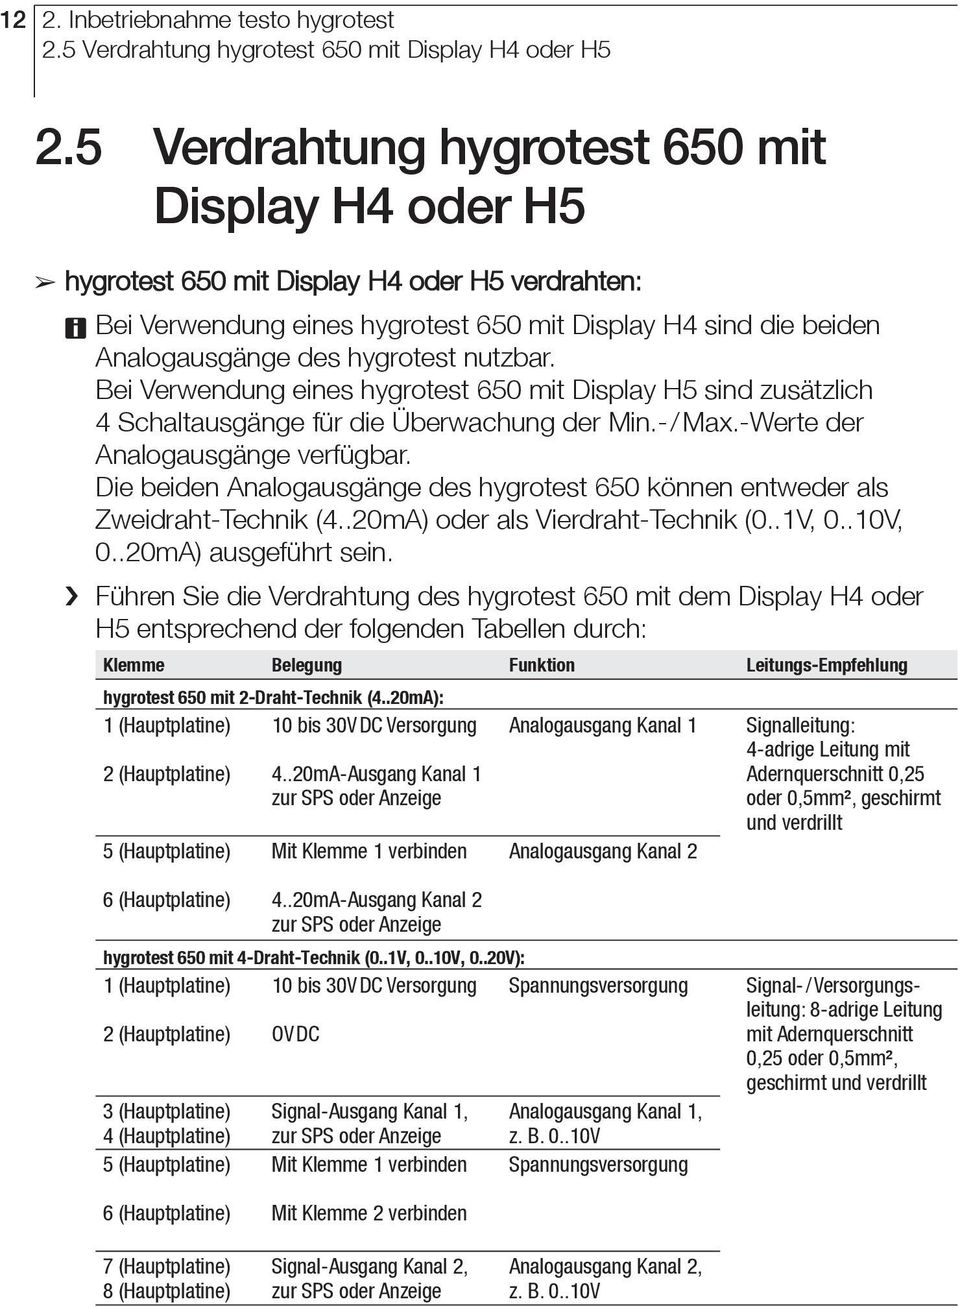 nutzbar. Bei Verwendung eines hygrotest 650 mit Display H5 sind zusätzlich 4 Schaltausgänge für die Überwachung der Min.-/ Max.-Werte der Analogausgänge verfügbar.